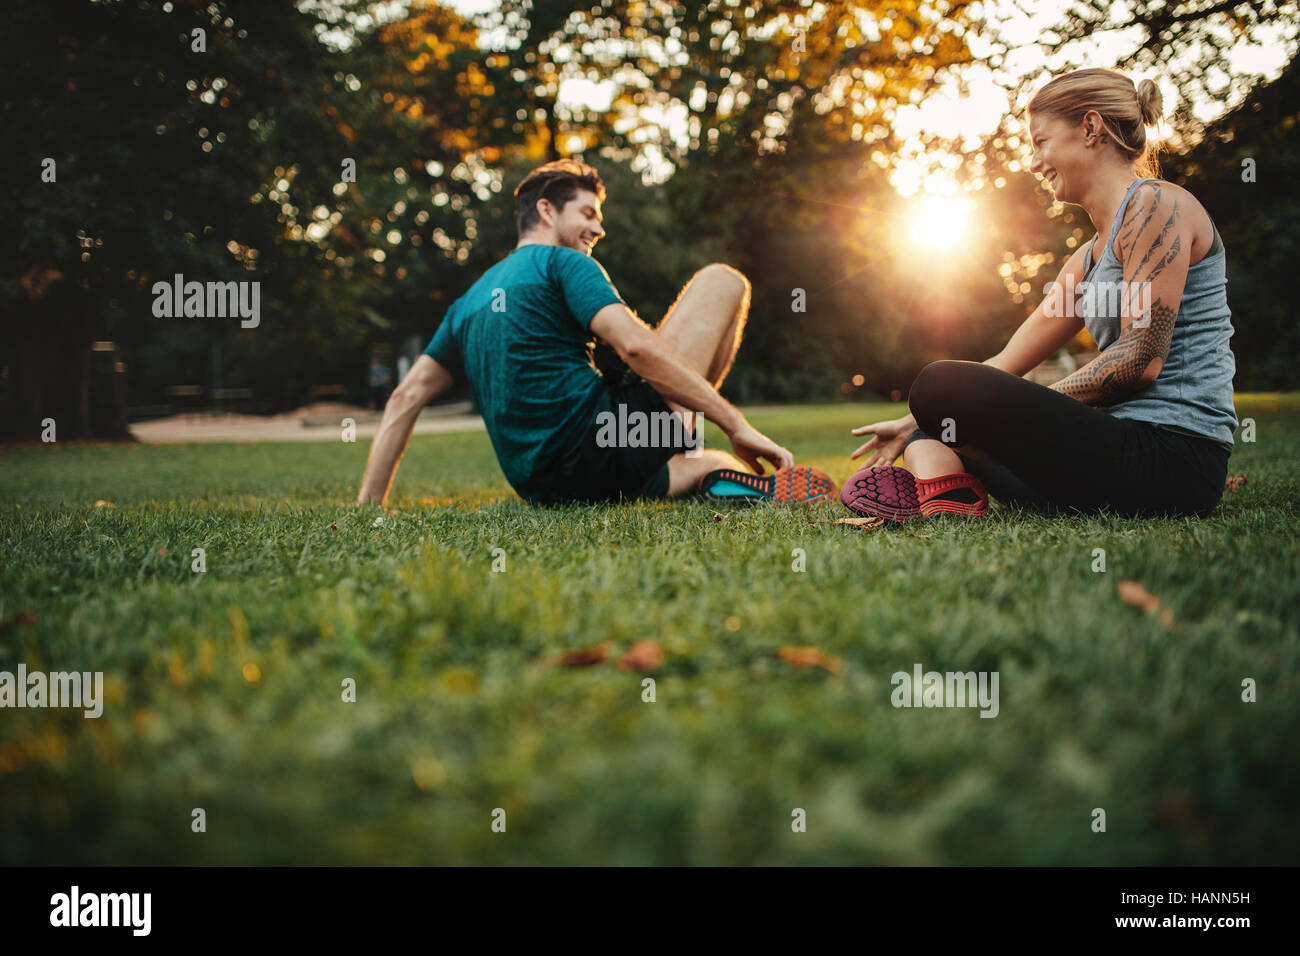 Happy fit jeune couple exercising in park. Se détendre après une séance de formation physique. Banque D'Images